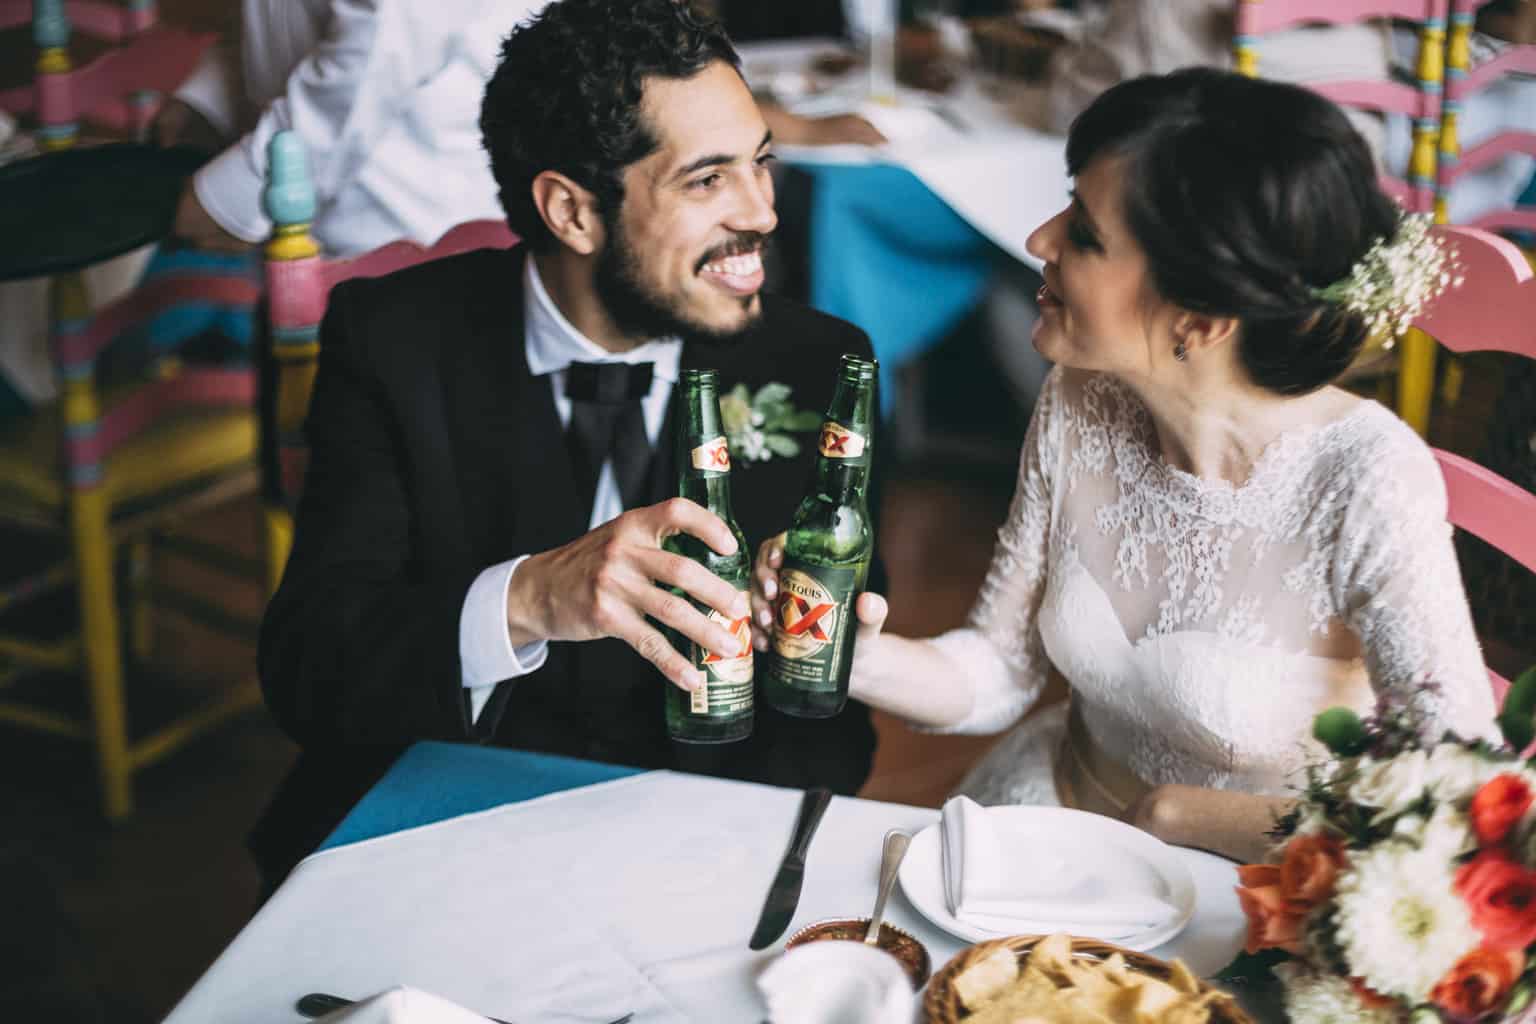 La boda Mexicana - Las bodas de Tatín